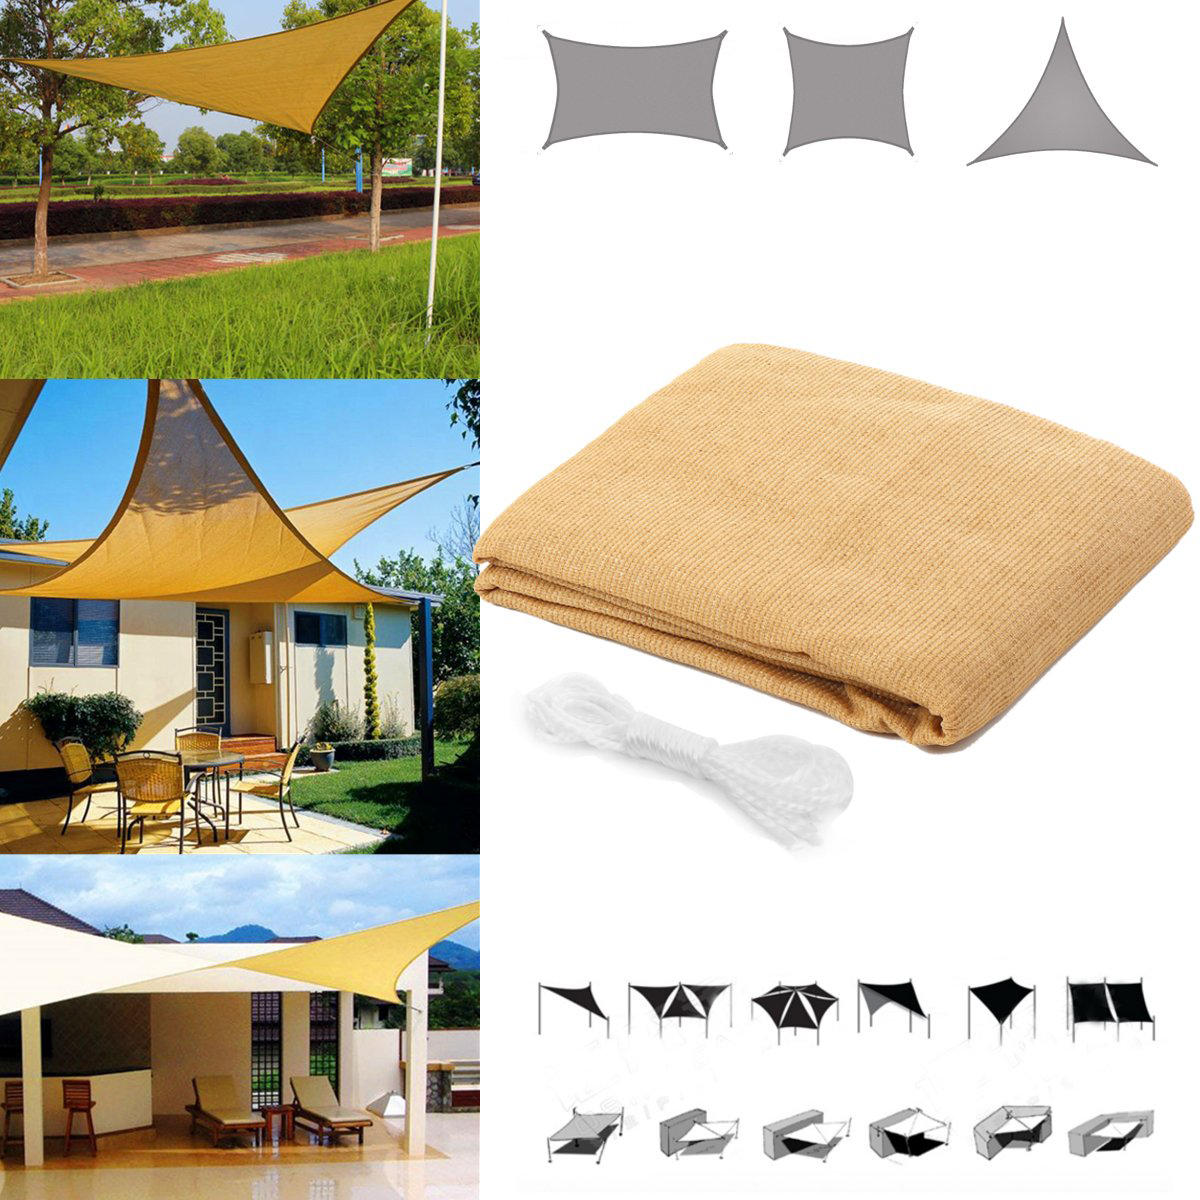 Carpa de sombra de sol cuadrada/triangular resistente al agua y anti-UV para jardín, patio, acampada al aire libre.